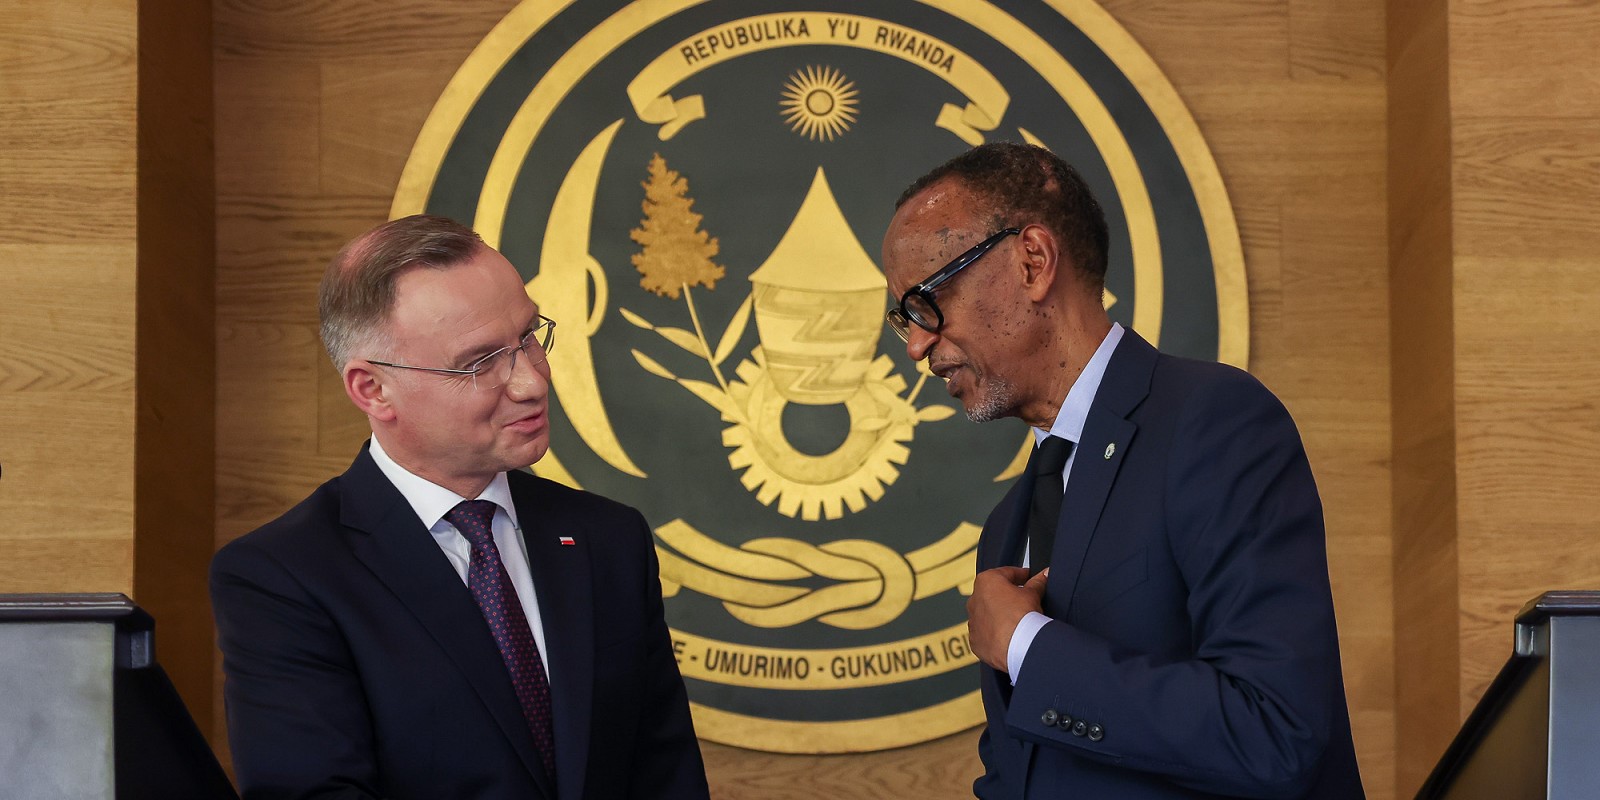 Polski prezydent jest krytykowany przez Demokratyczną Republikę Konga za współpracę z Rwandą